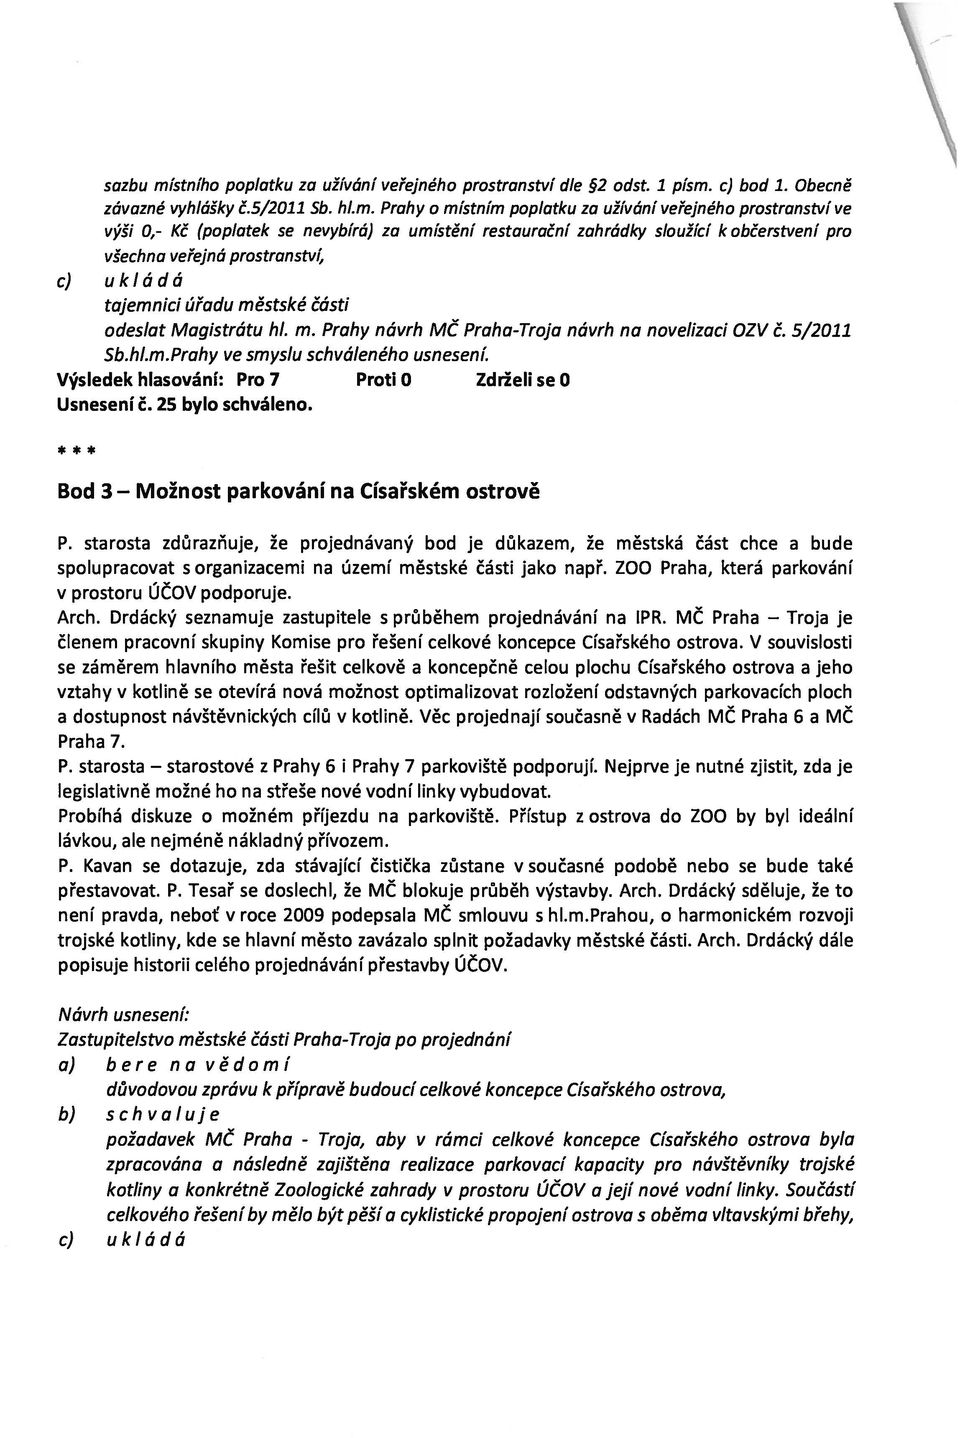 c) bod 1. Obecně závazné vyhlášky č.5/2011 Sb. hl.m.